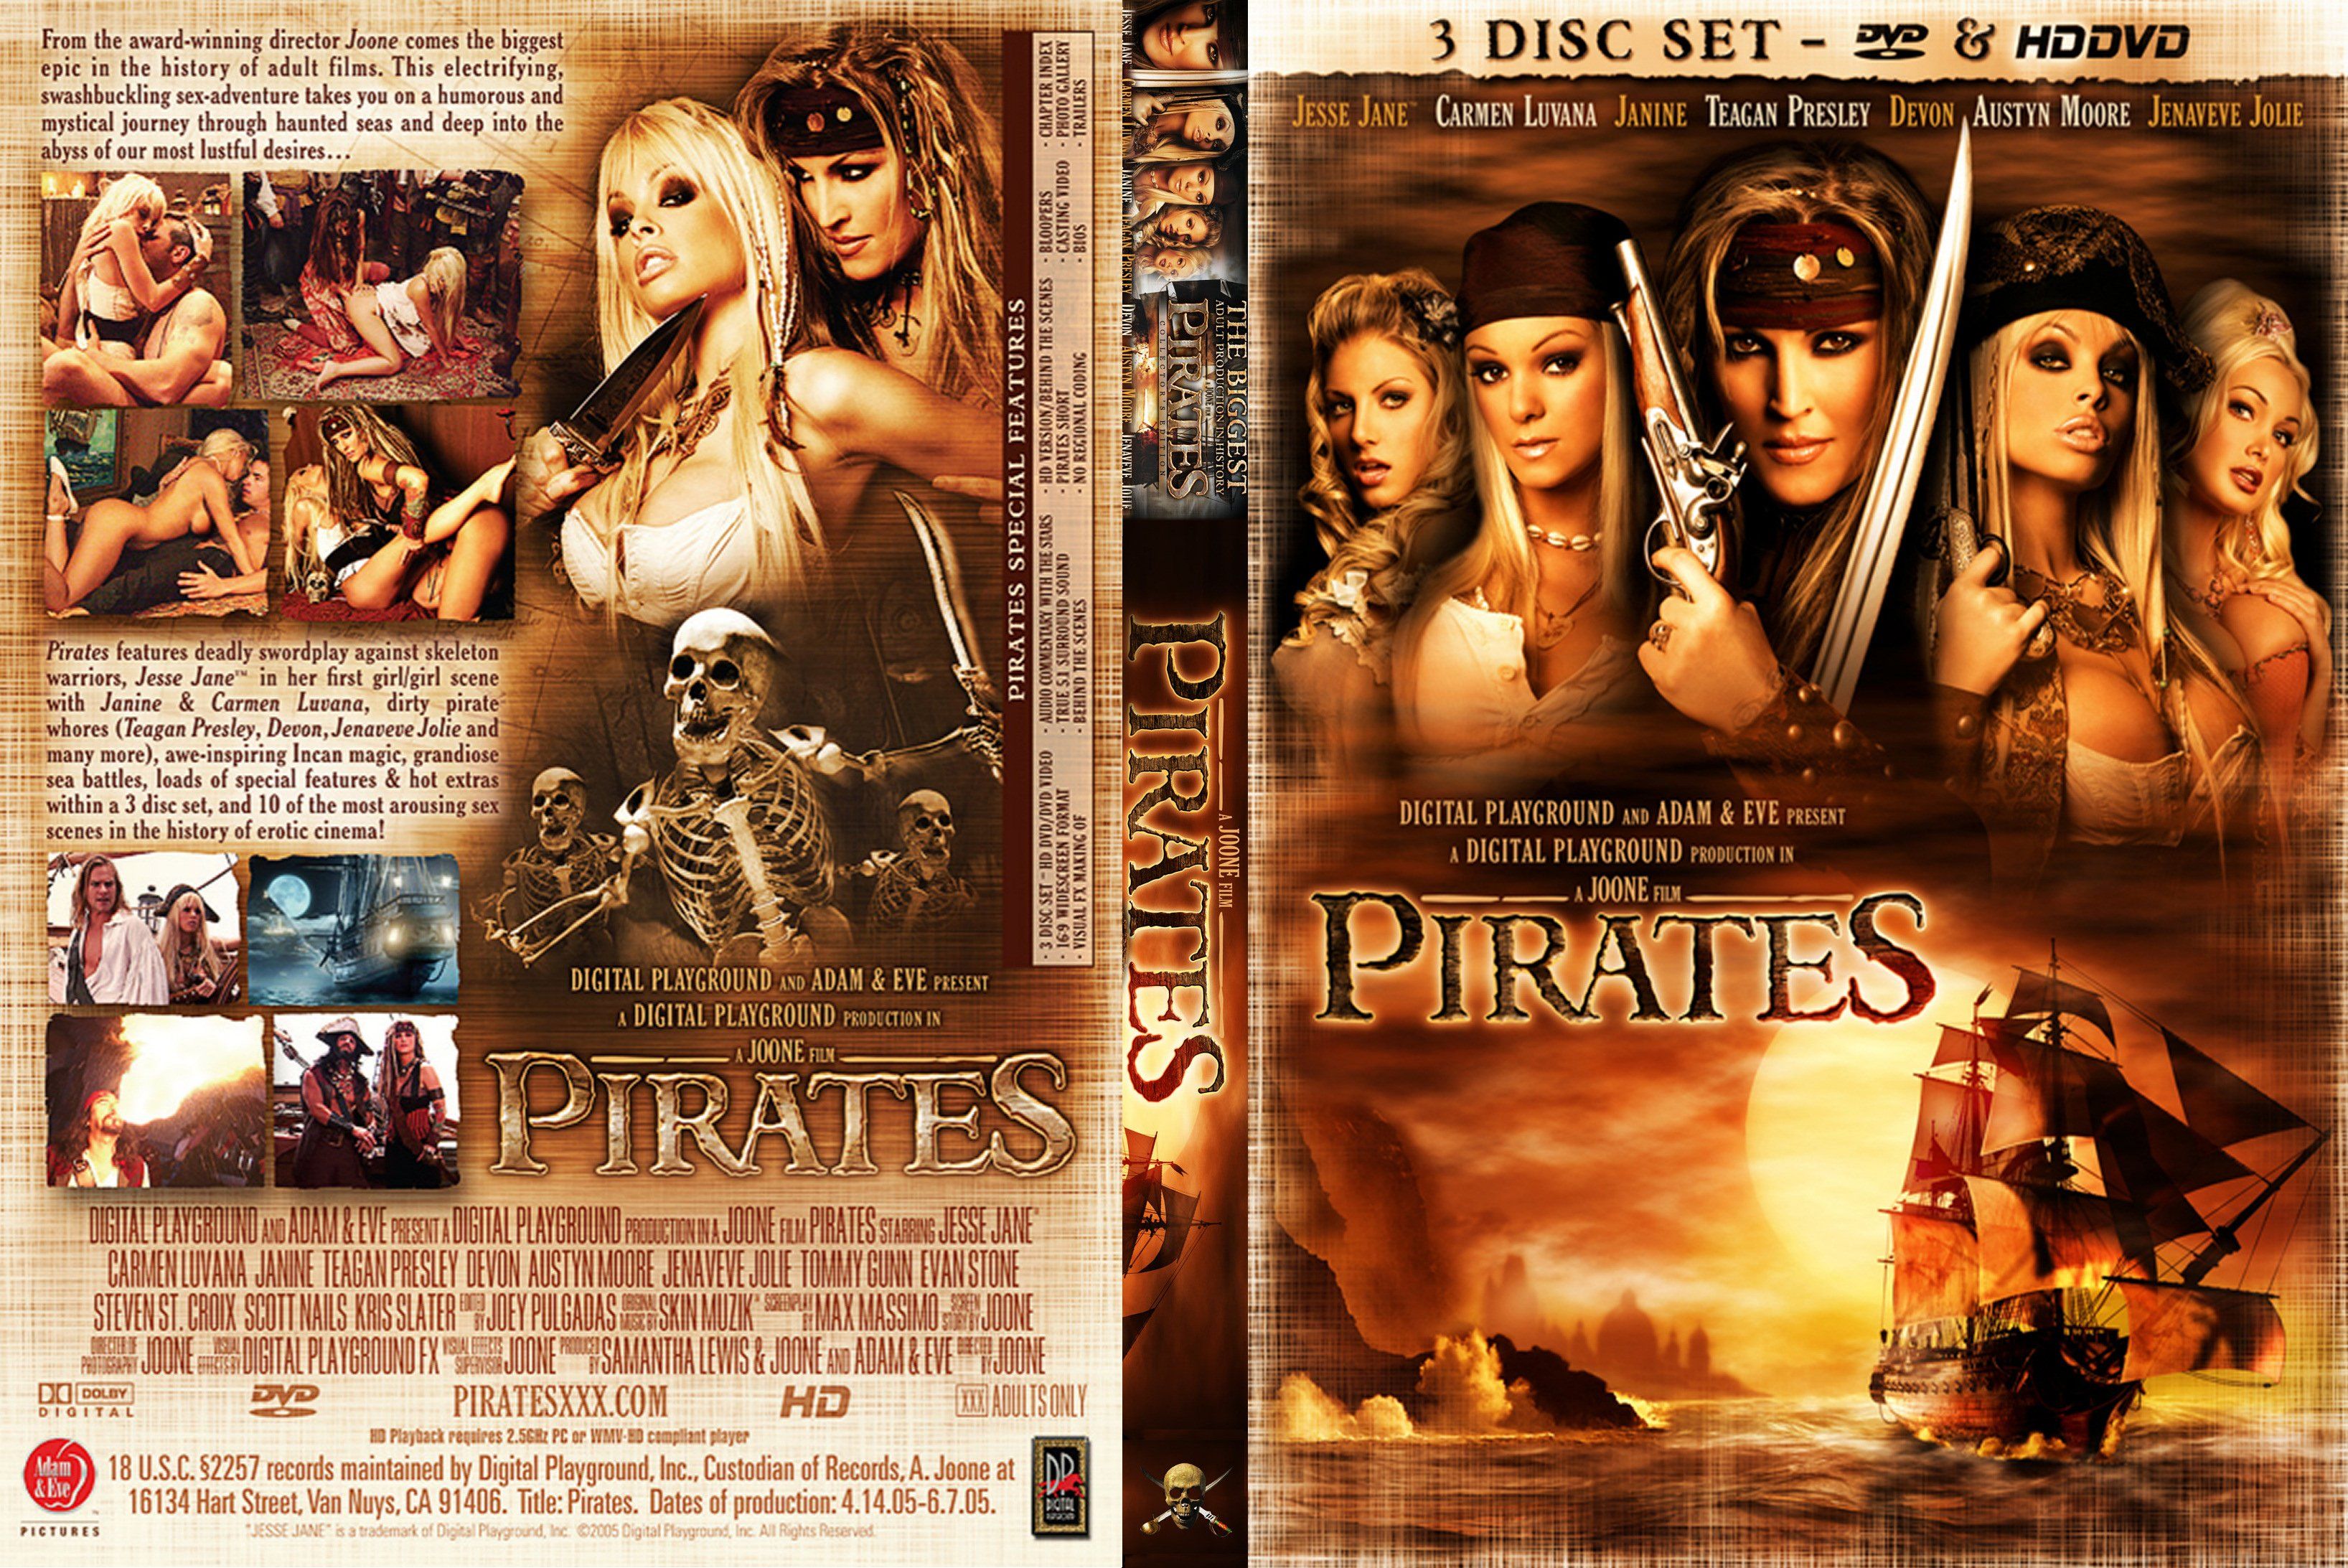 Showing Media & Posts for Pirates belladonna and jesse jane xxx | www.veu. xxx